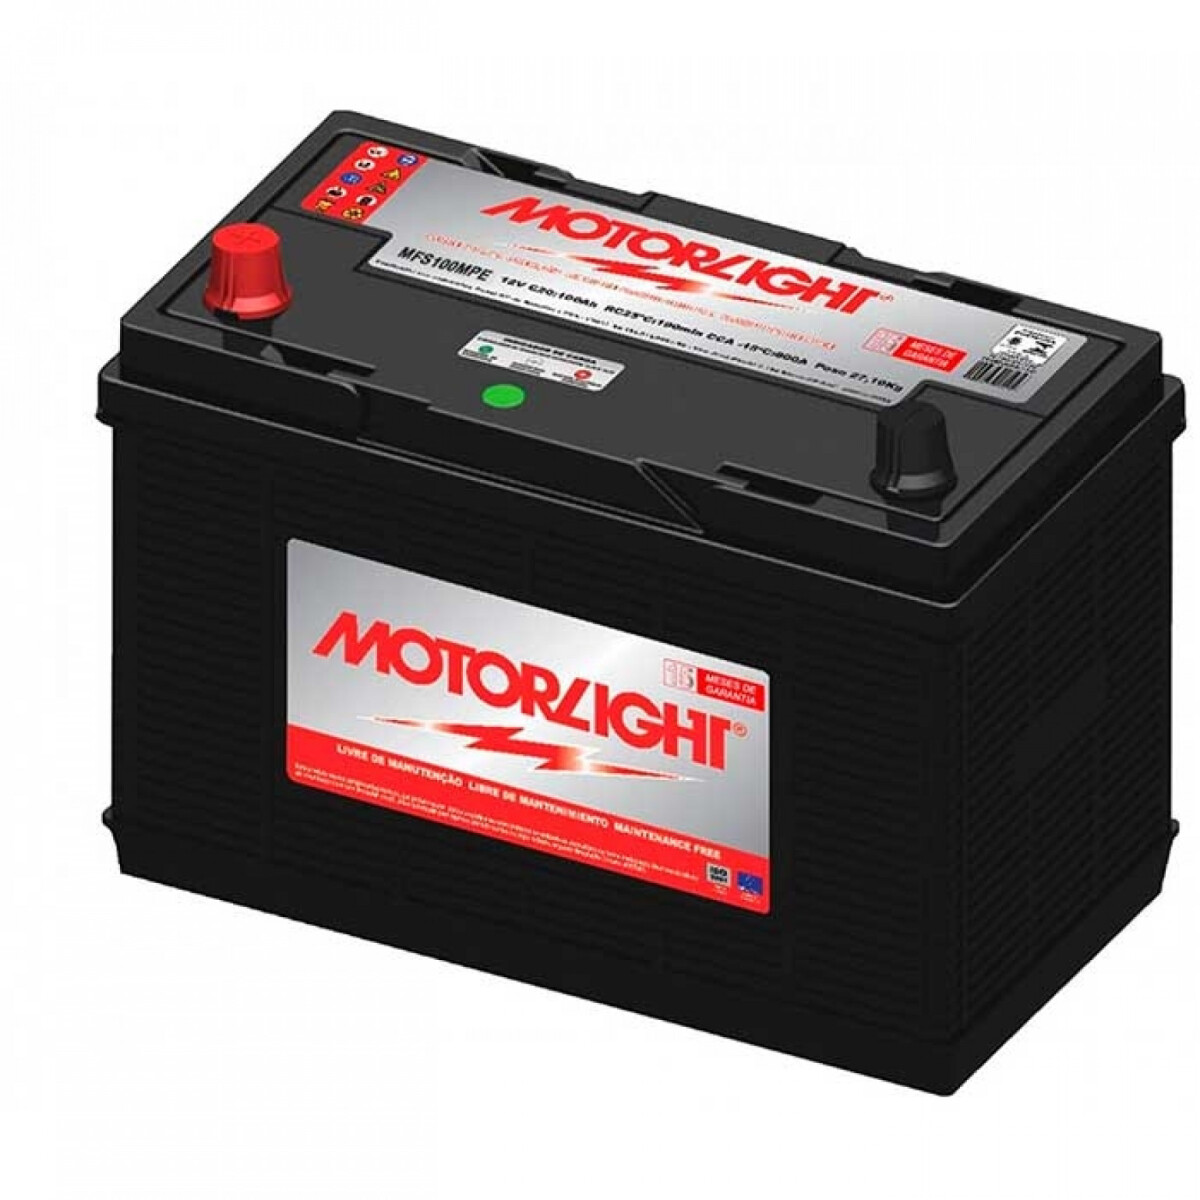 Bateria Motorlight - 150amp Polo Positivo Derecho 